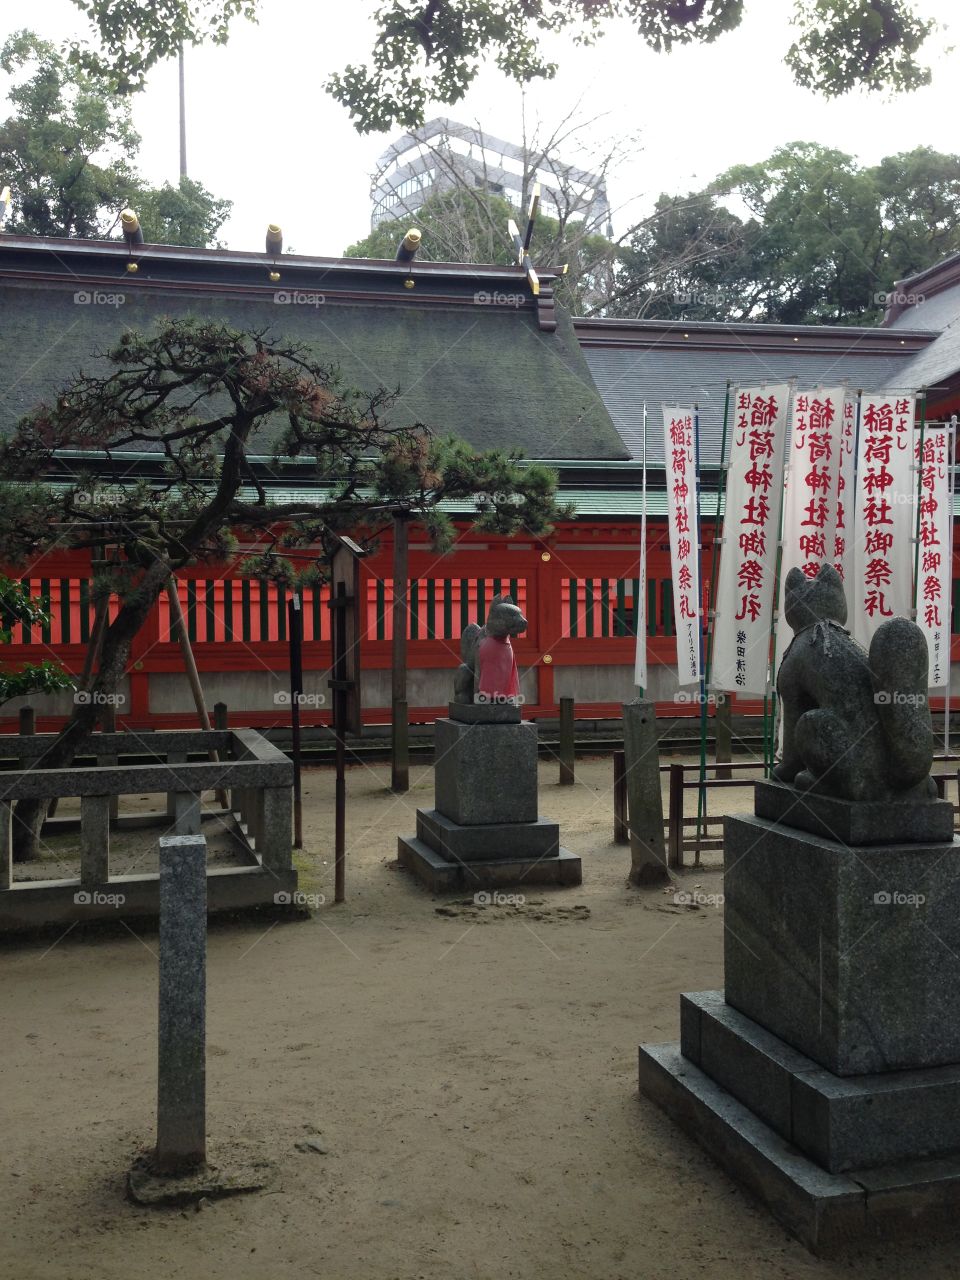 Sumoyoshi shrine